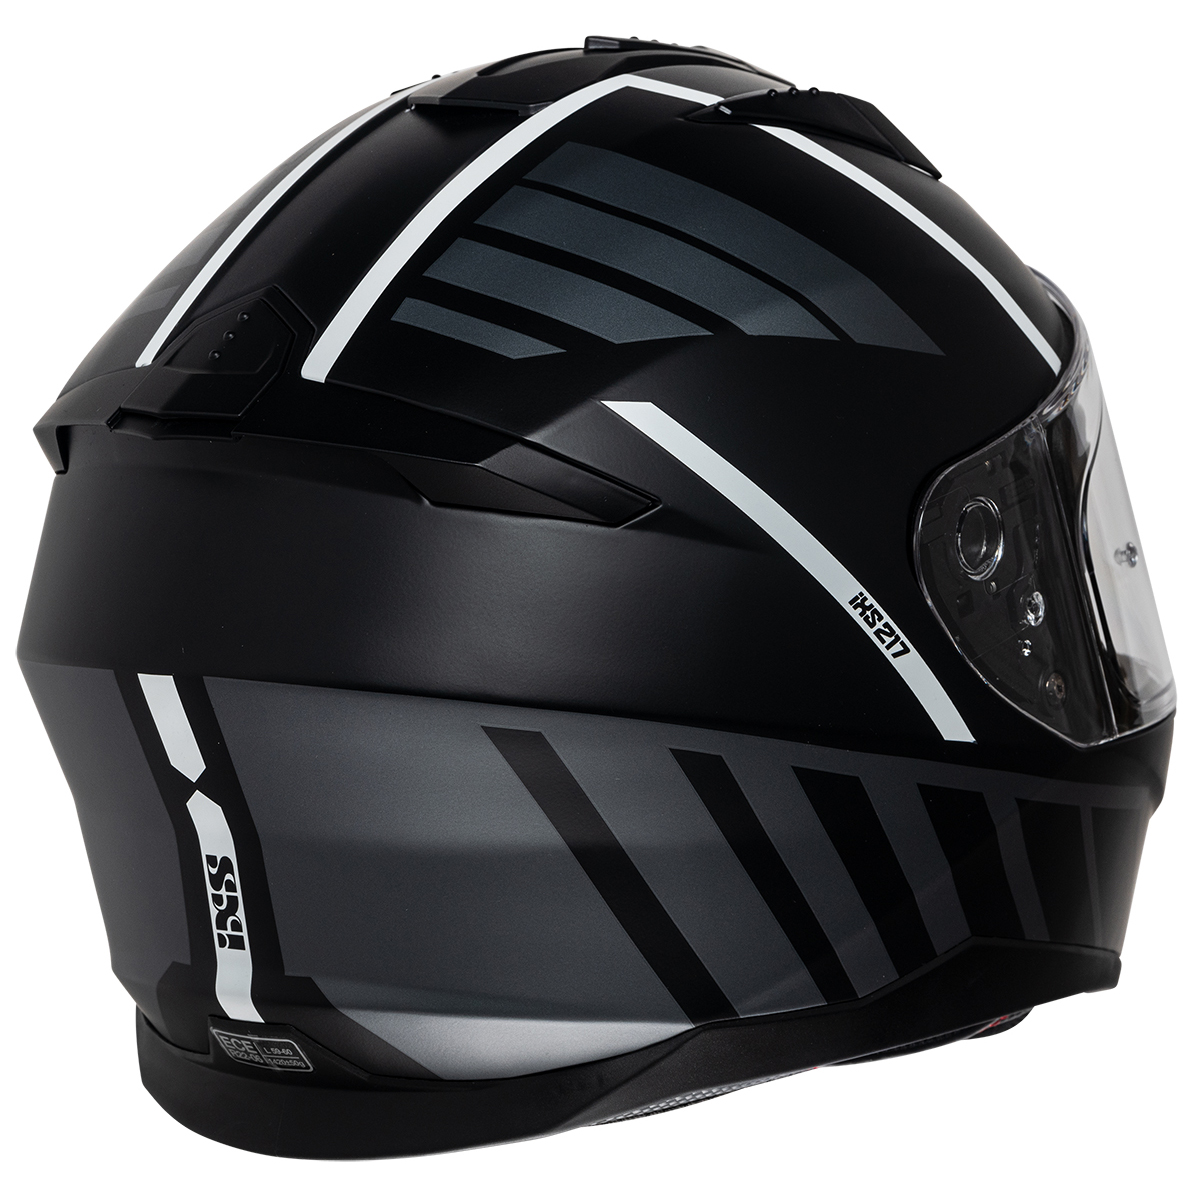 iXS Helm iXS217 2.0, schwarz-weiß matt